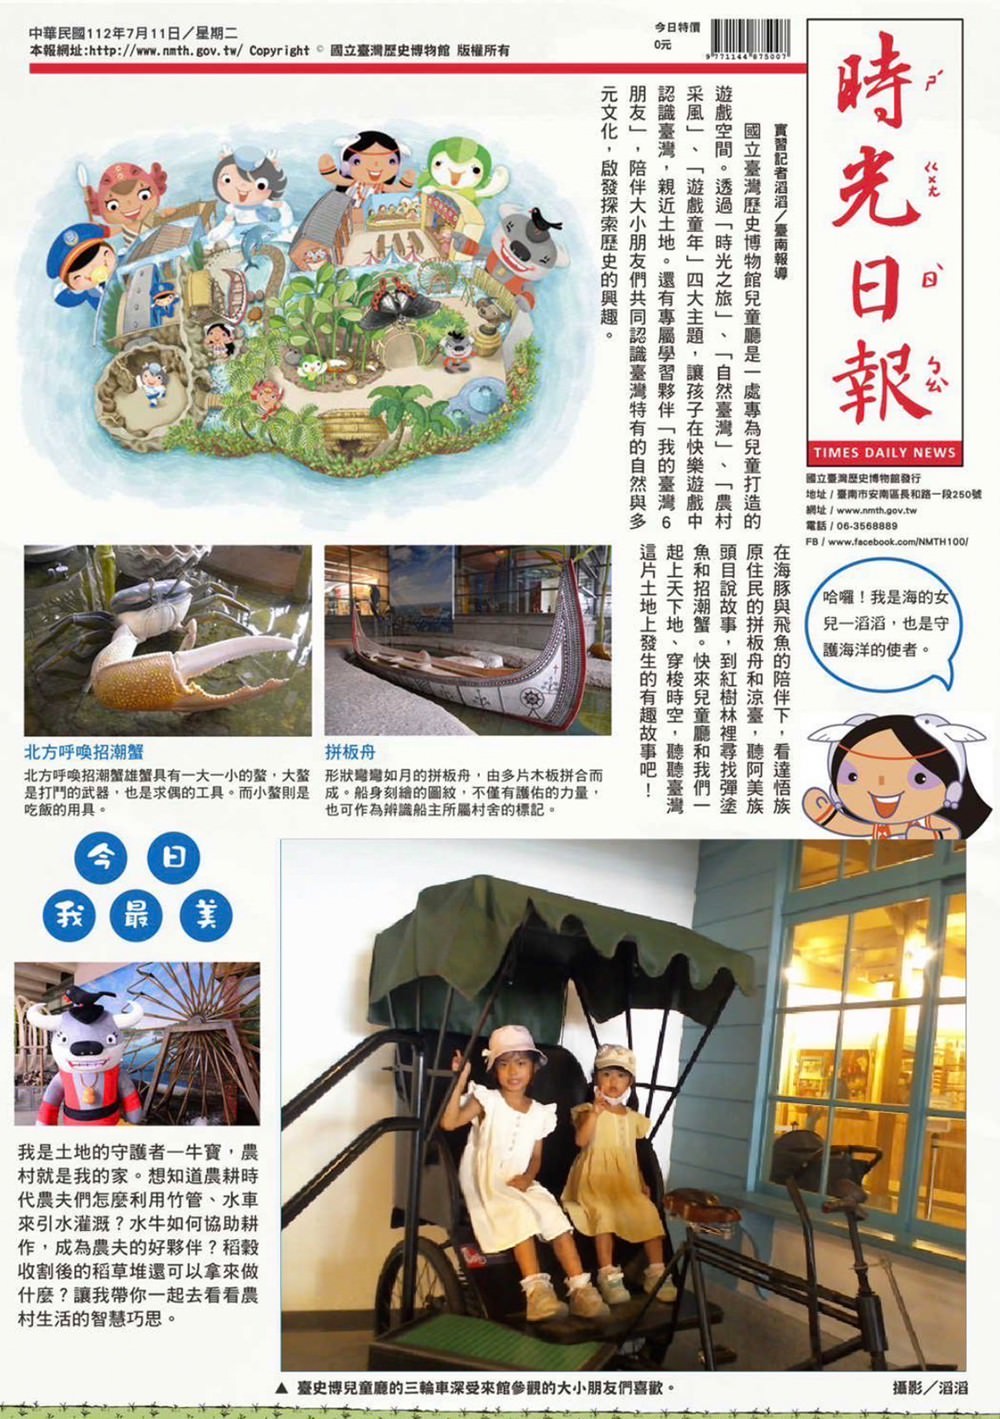 國立臺灣歷史博物館 74